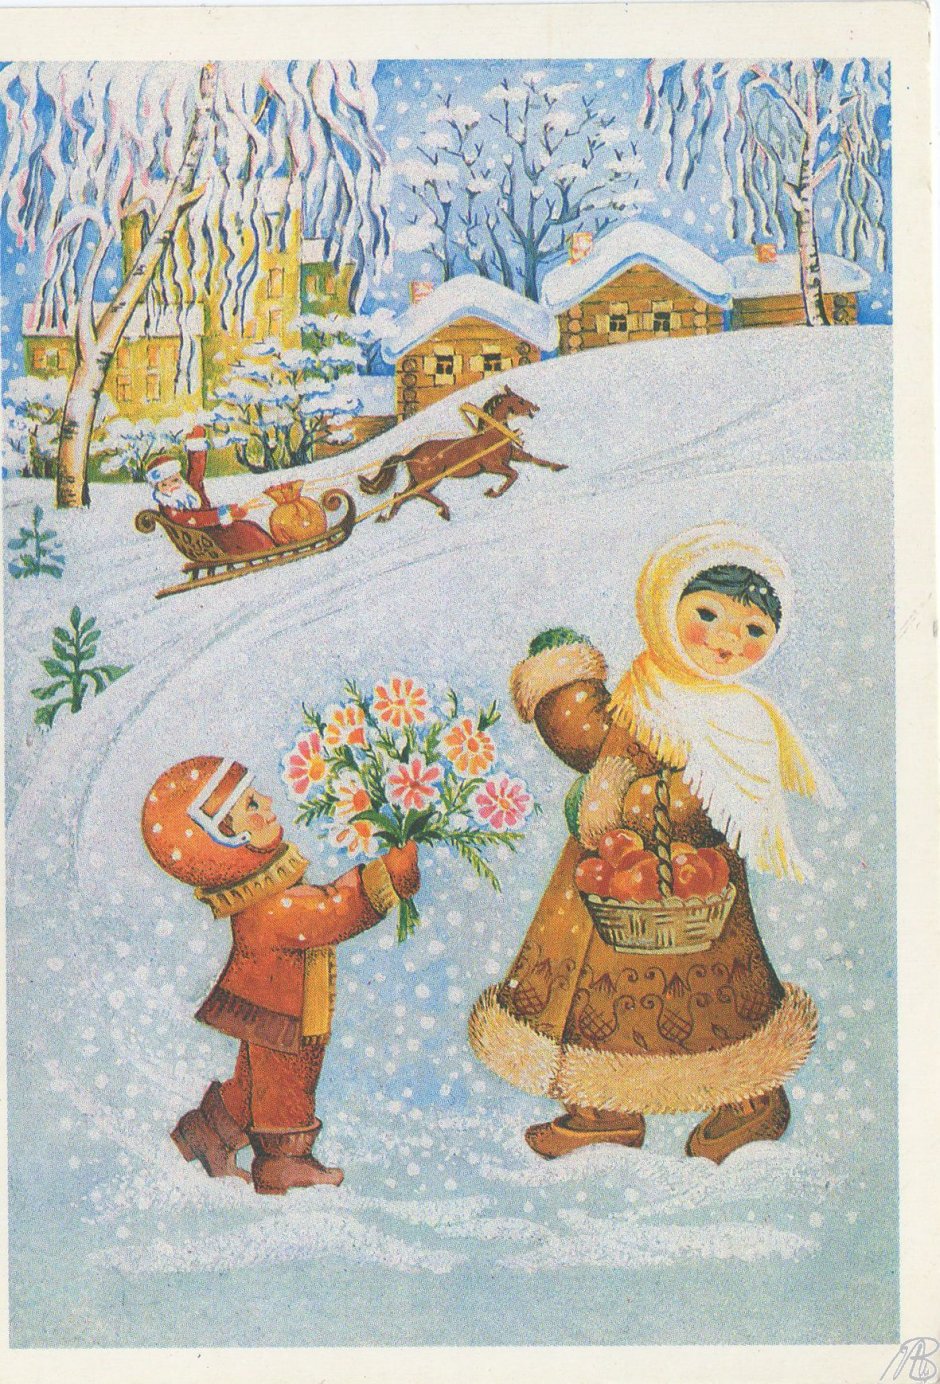 Советские зимние открытки